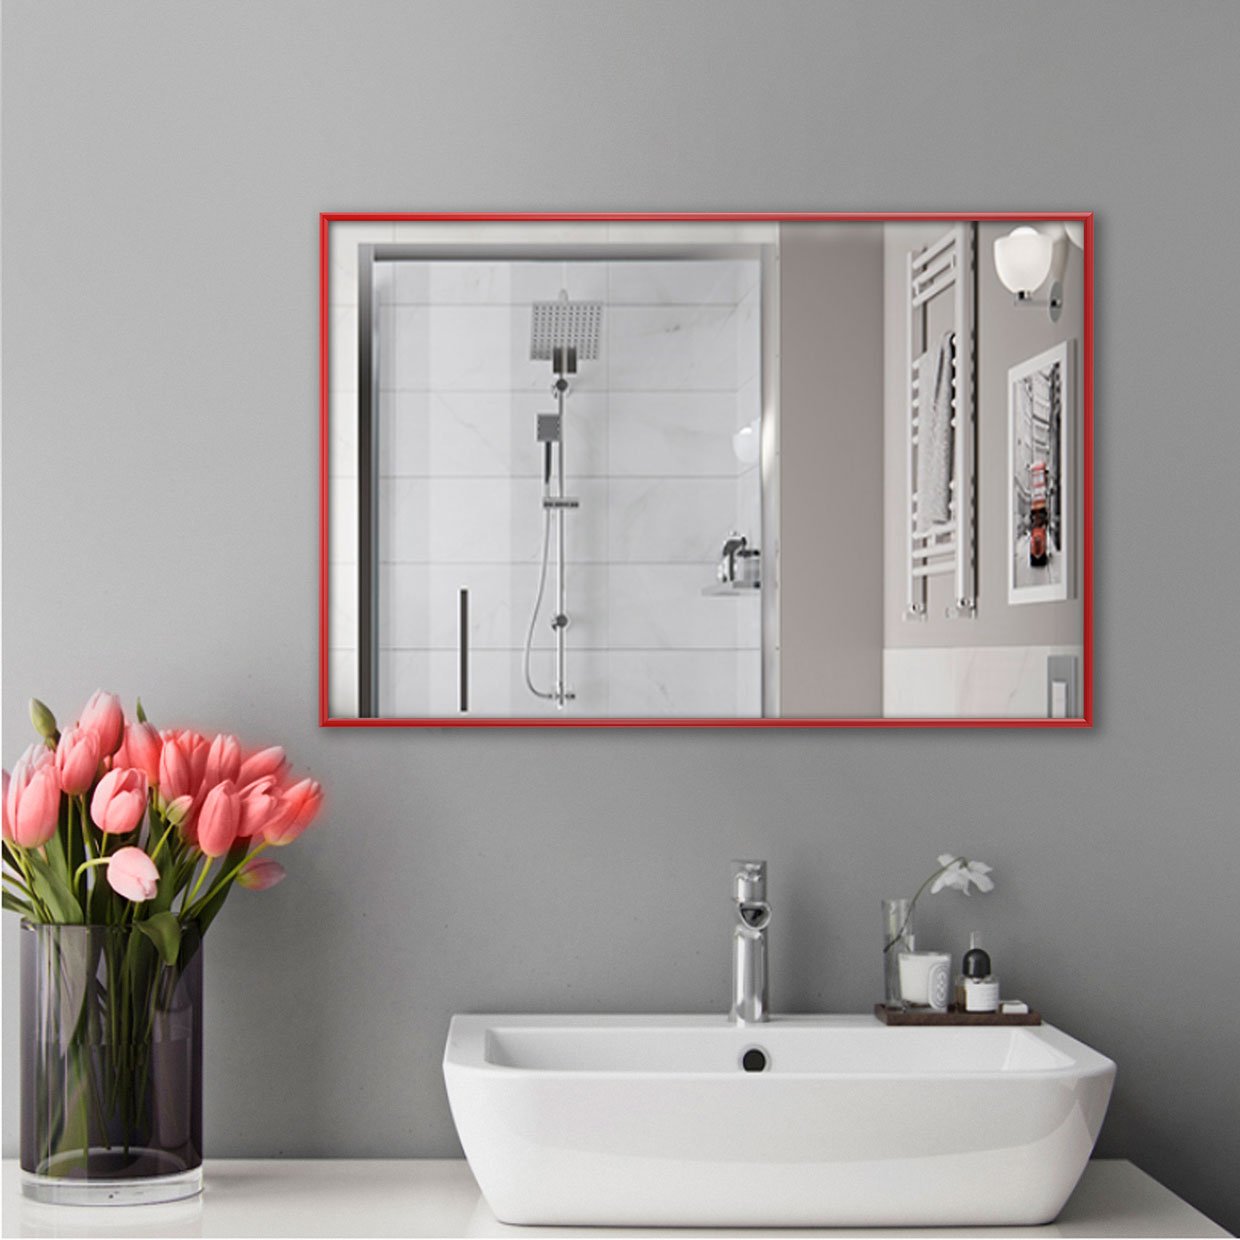 Зеркало настенное для ванной комнаты в красном цвете